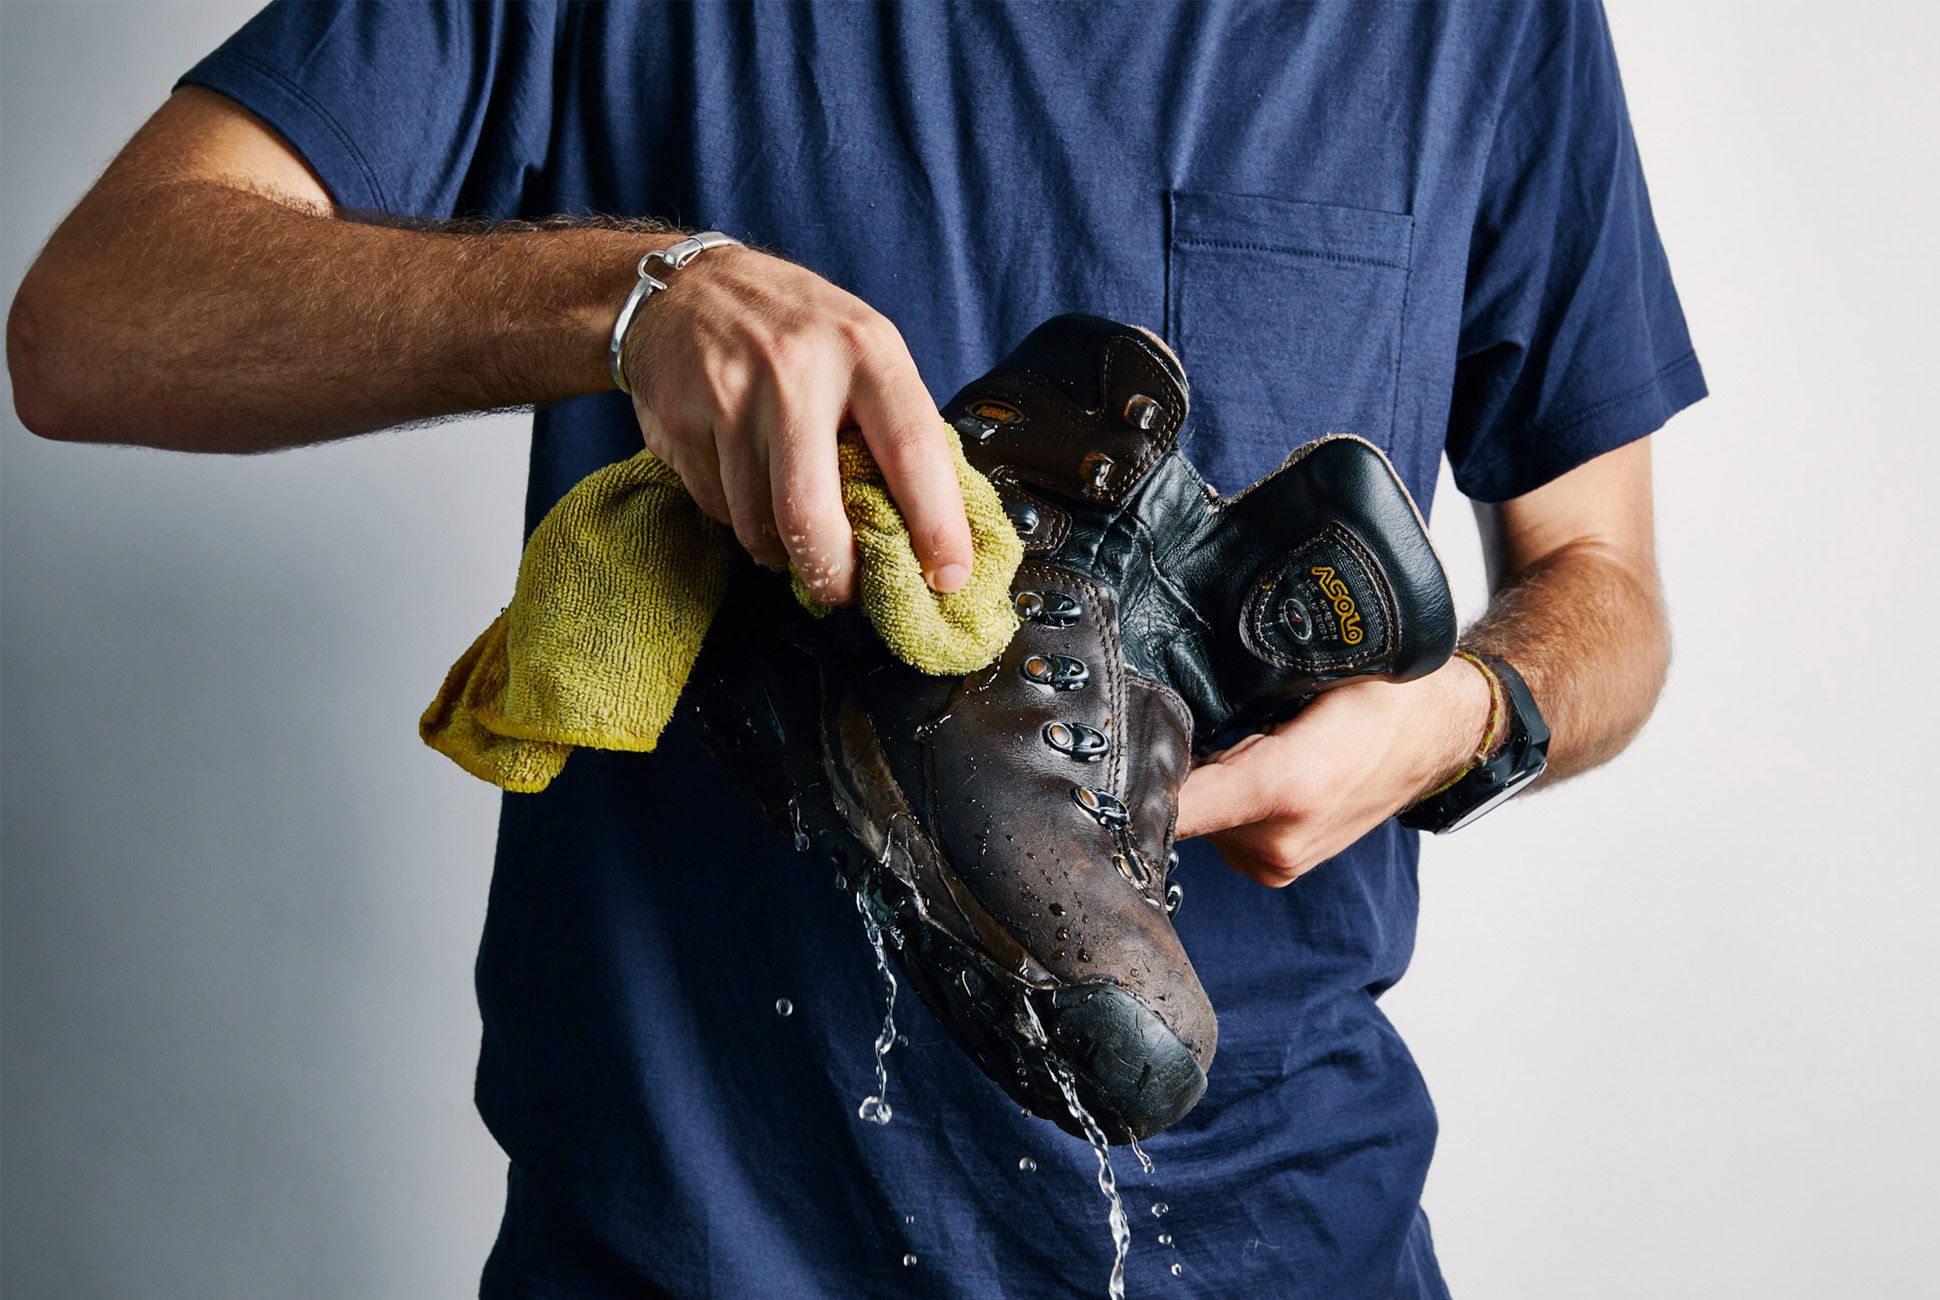 cheap waterproof hiking shoes